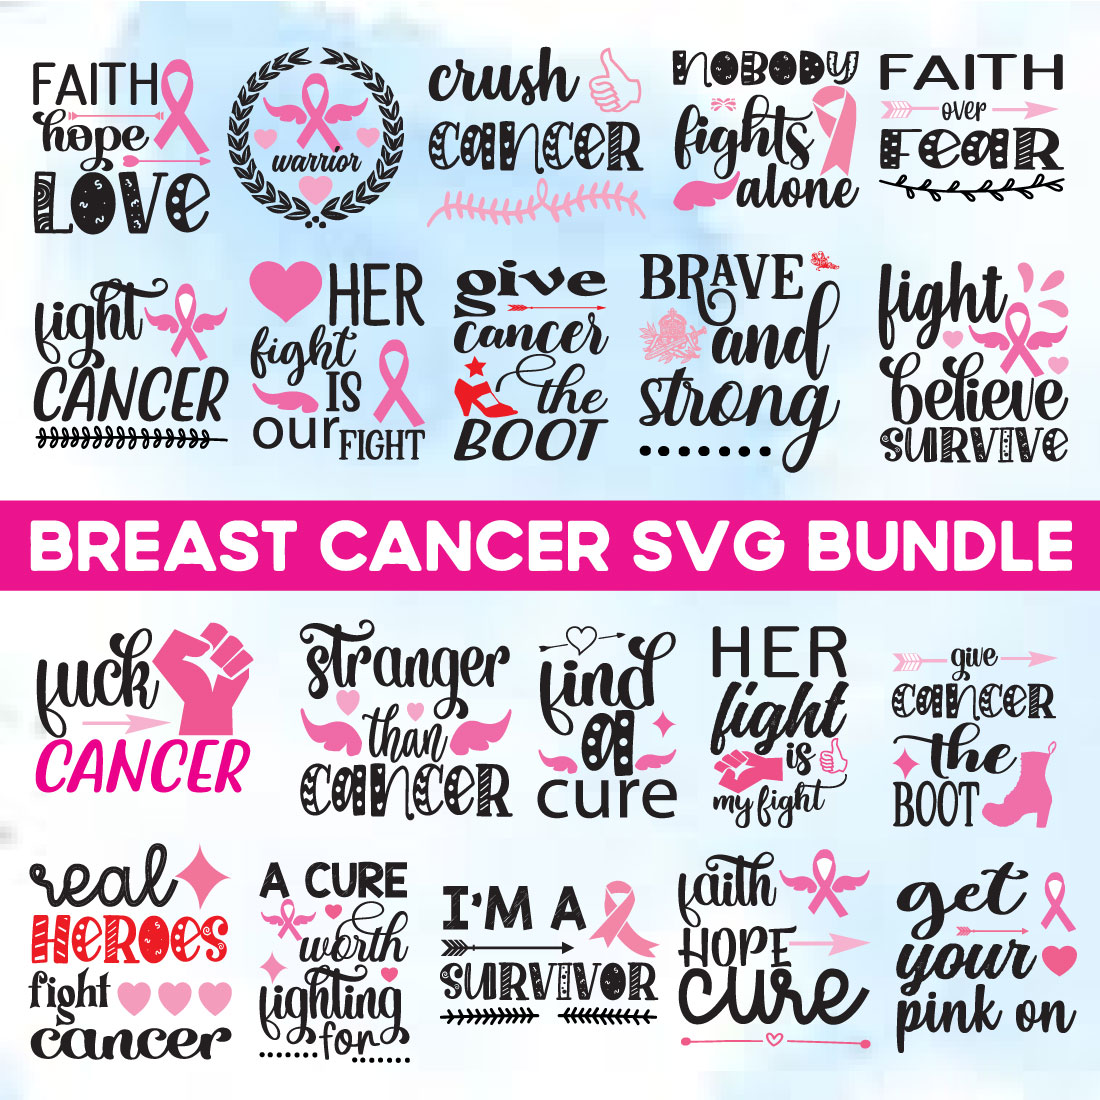 Breast Cancer Svg Bundle cover image.